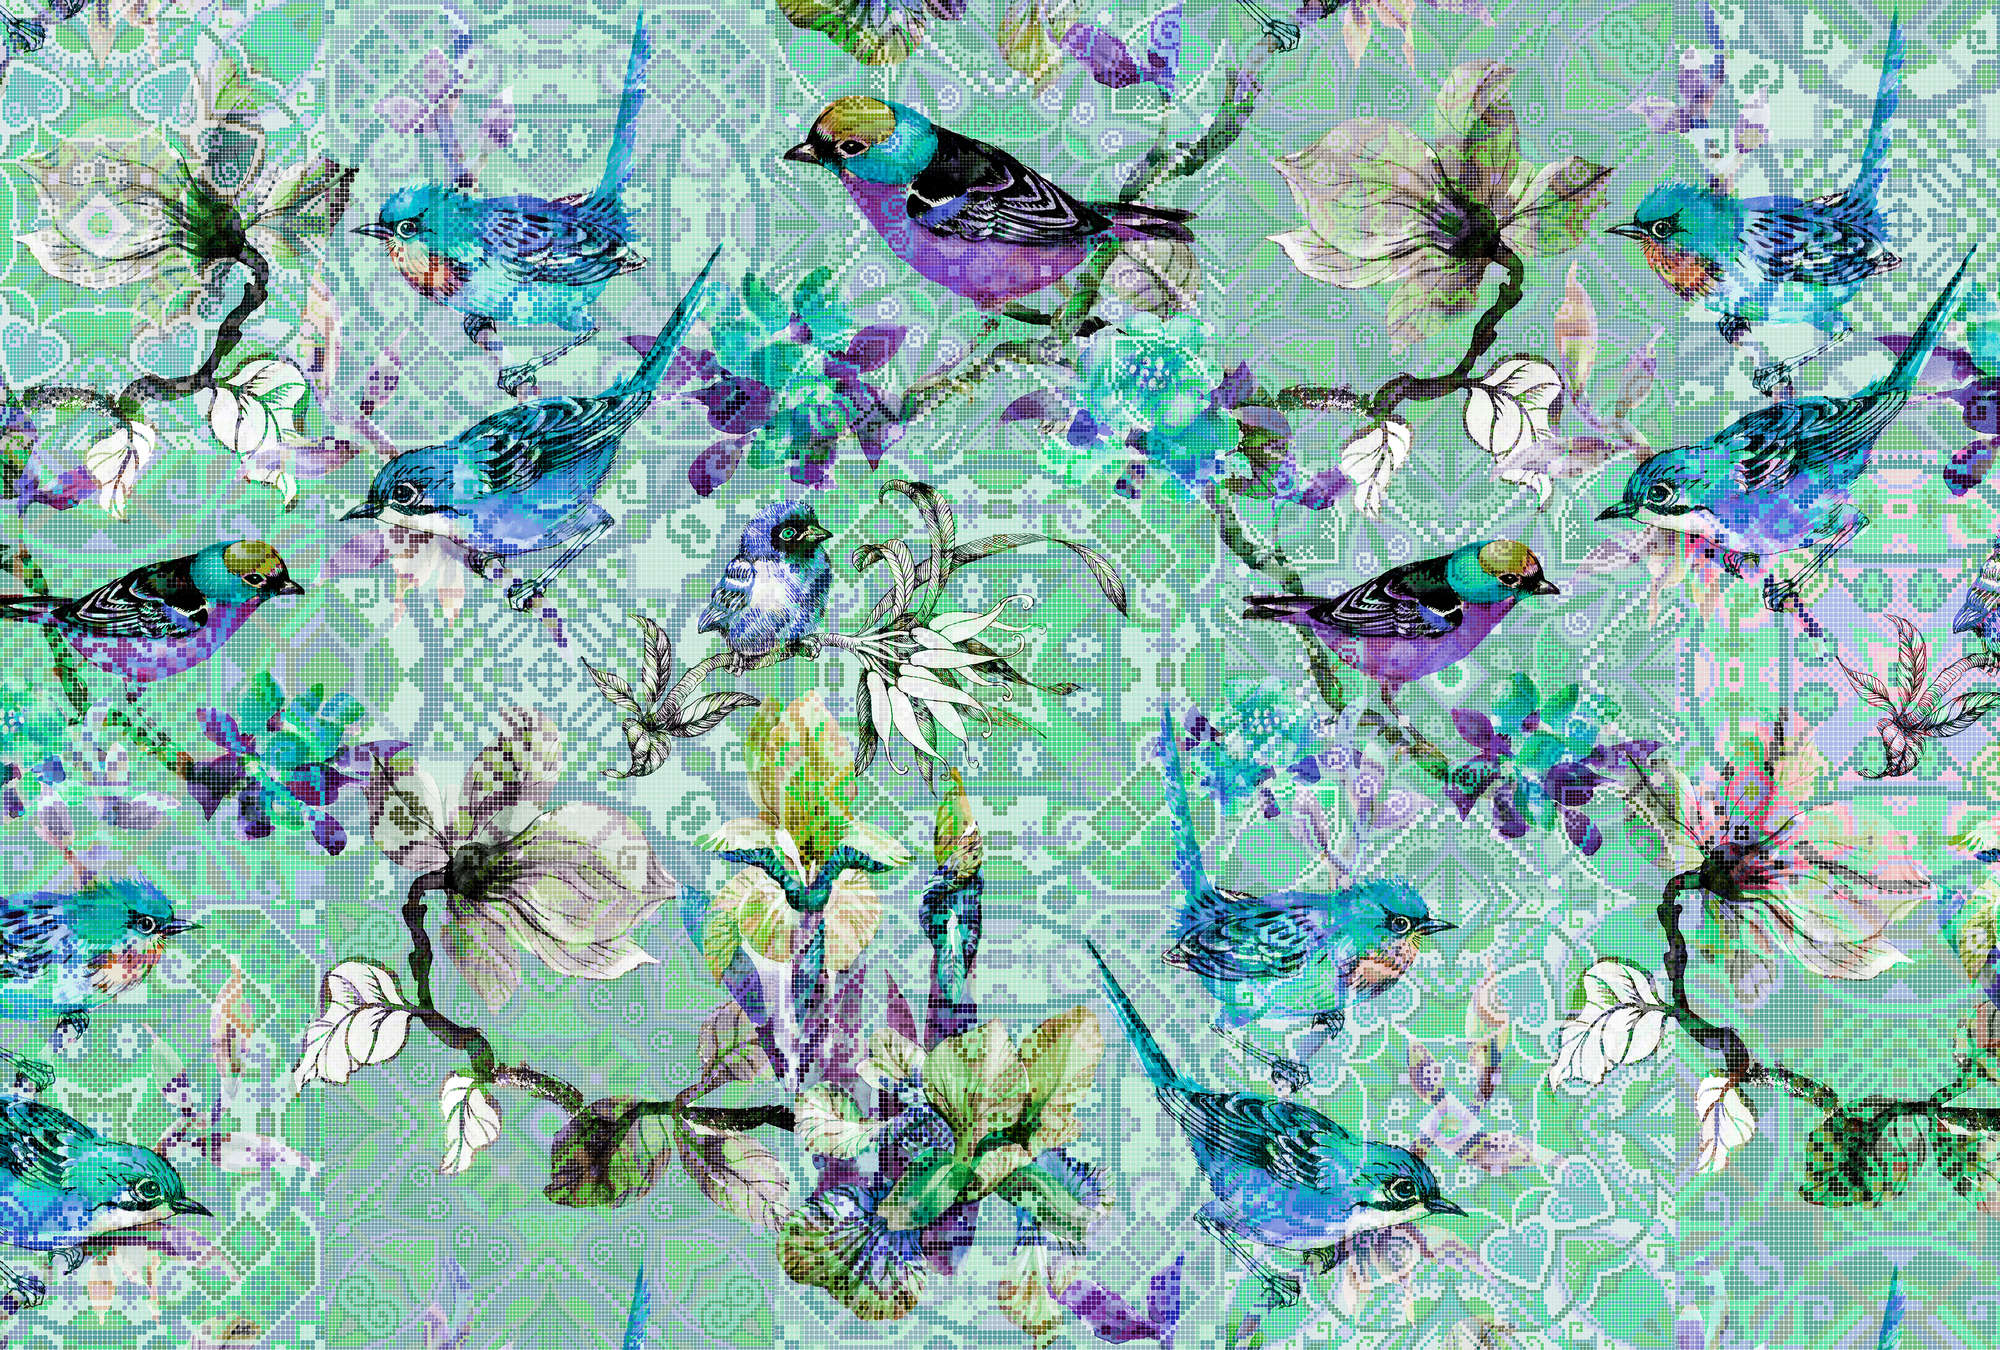             Papel pintado de pájaros con patrón de mosaico - Walls by Patel
        